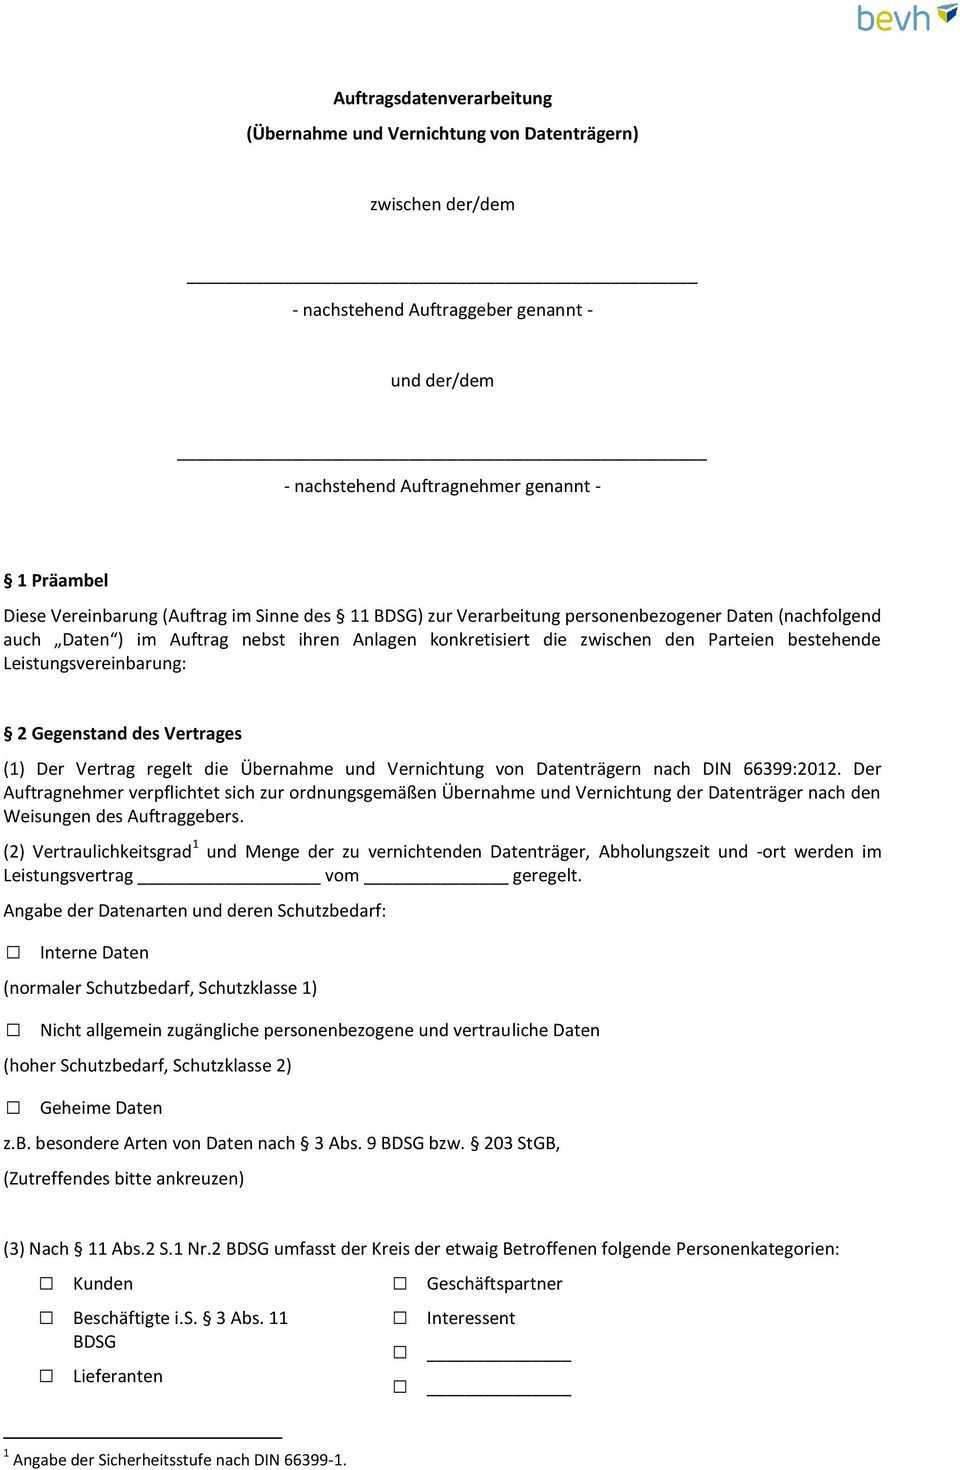 Auftrag Gemass 11 Bdsg Zur Vernichtung Von Datentragern Nach Din 66399 Pdf Kostenfreier Download